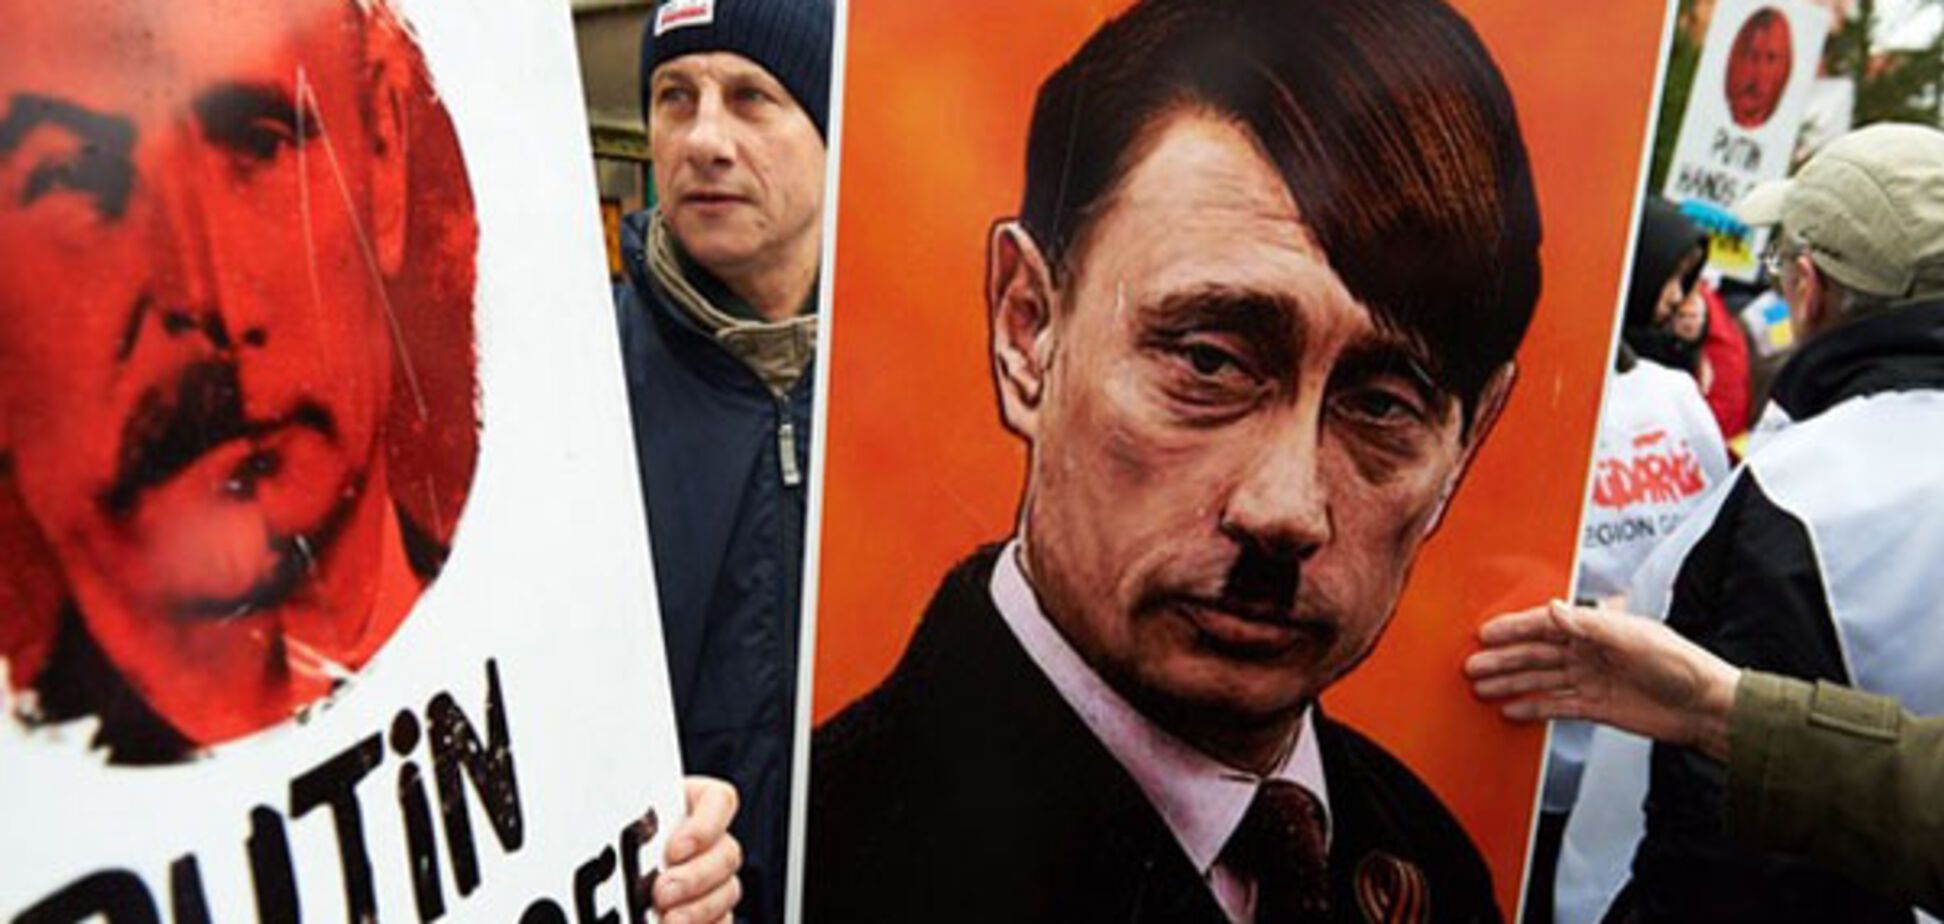 Путин напоминает Гитлера, но есть одно отличие – Пионтковский